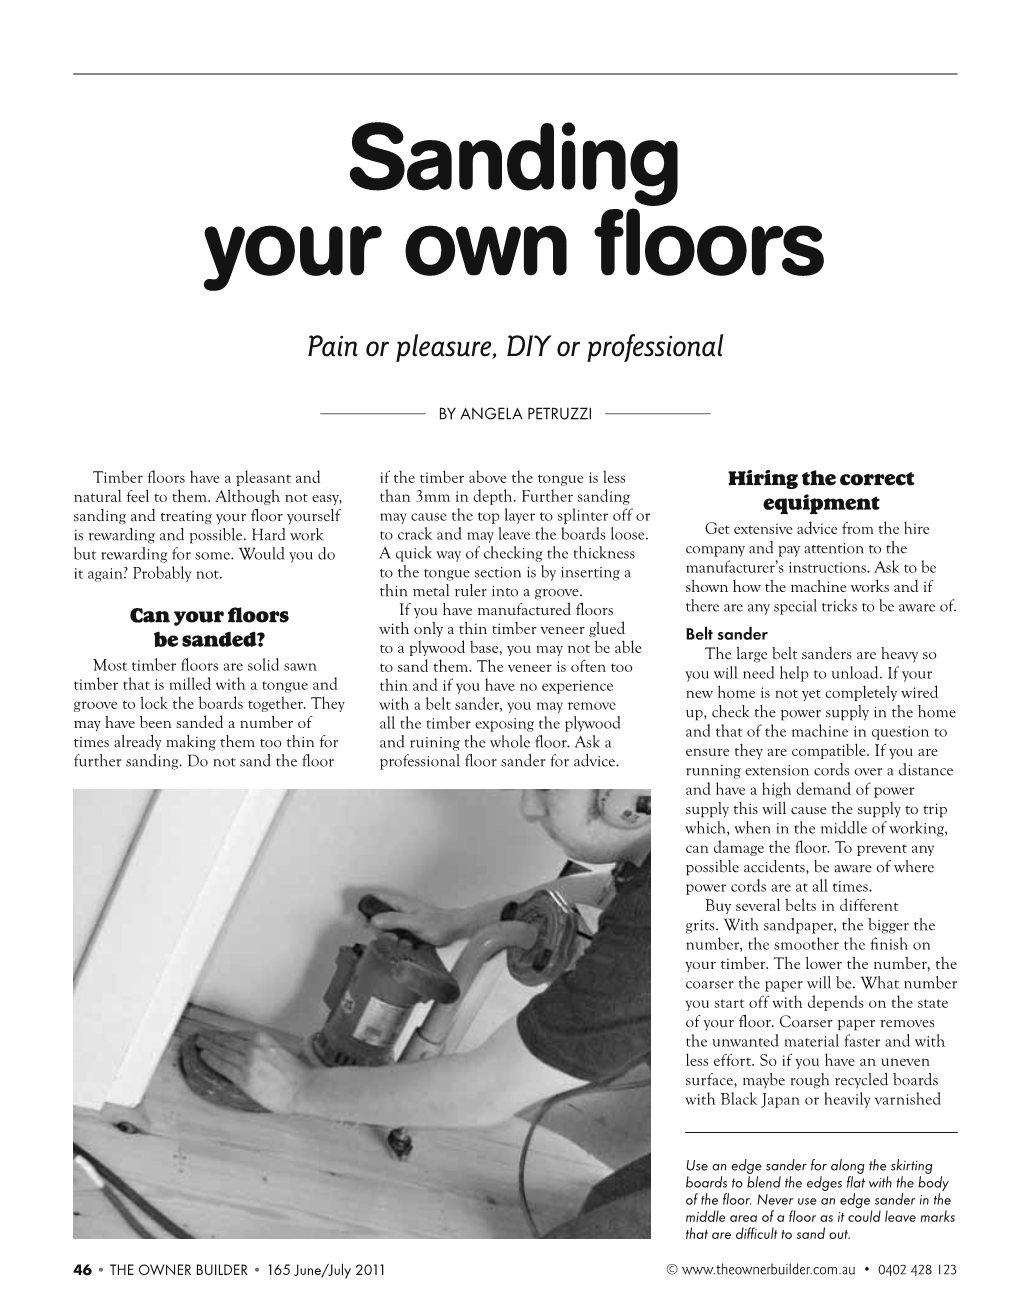 Sanding Your Own Floors